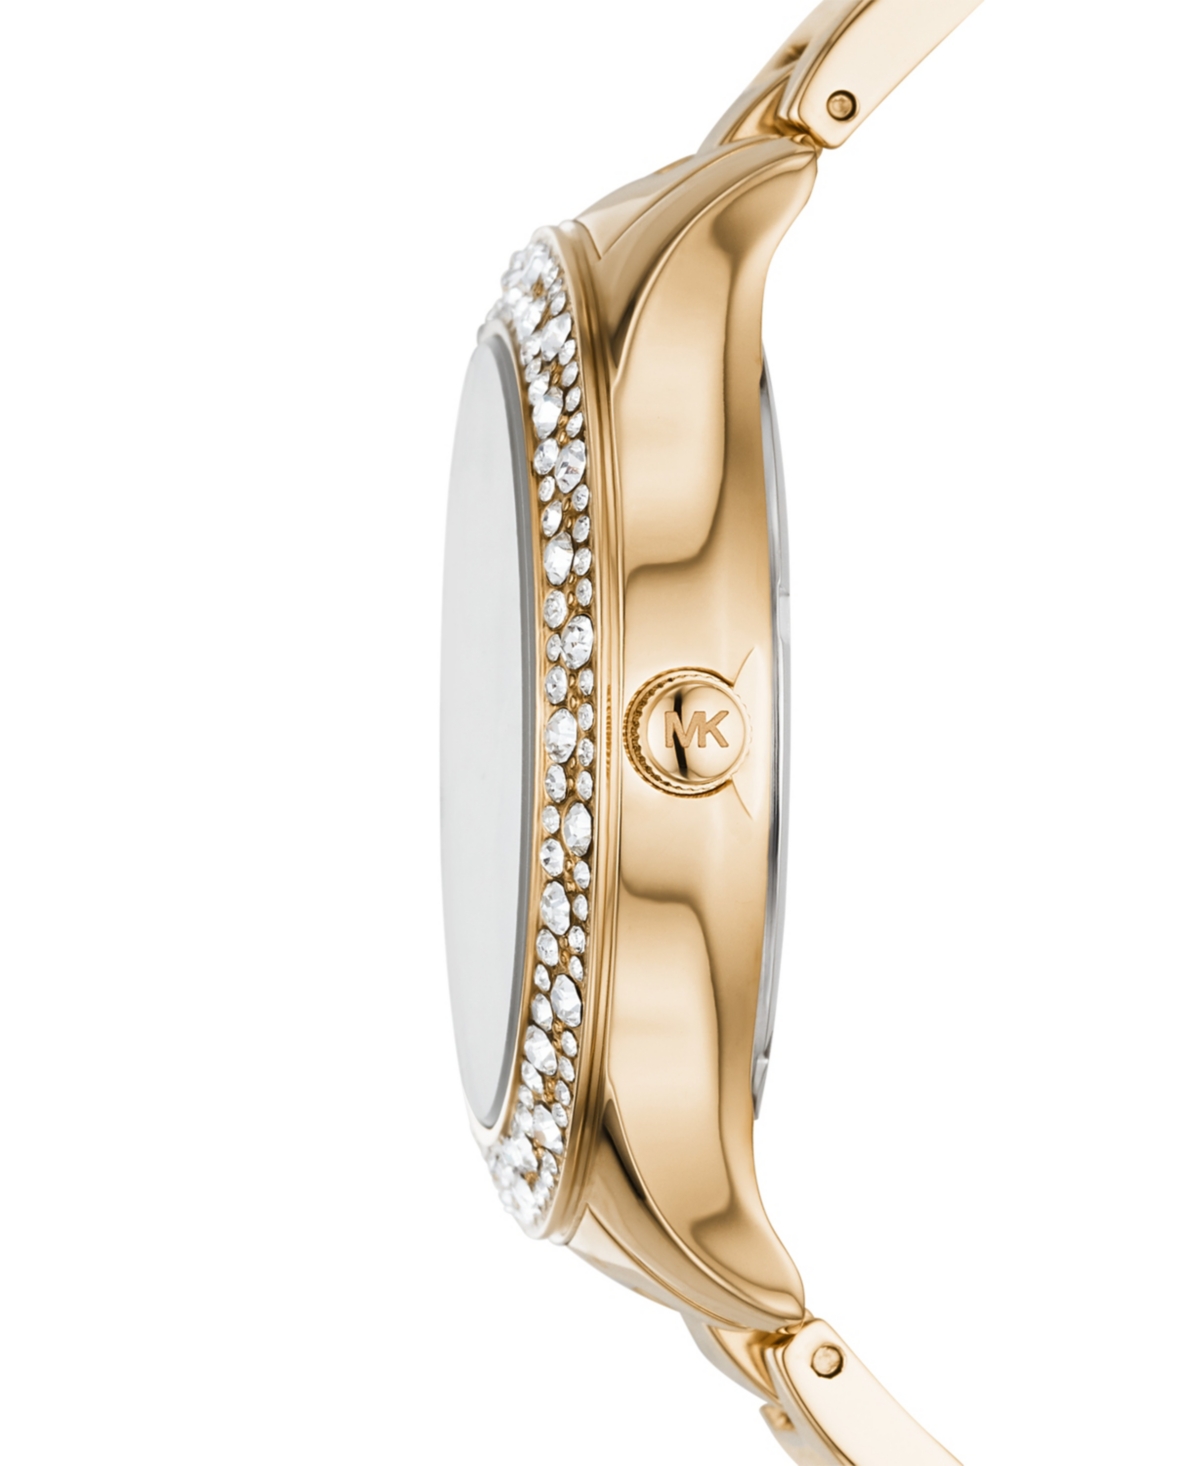 Shop Michael Kors Women's Liliane Gold-tone Stainless Steel Bracelet Watch 36mm